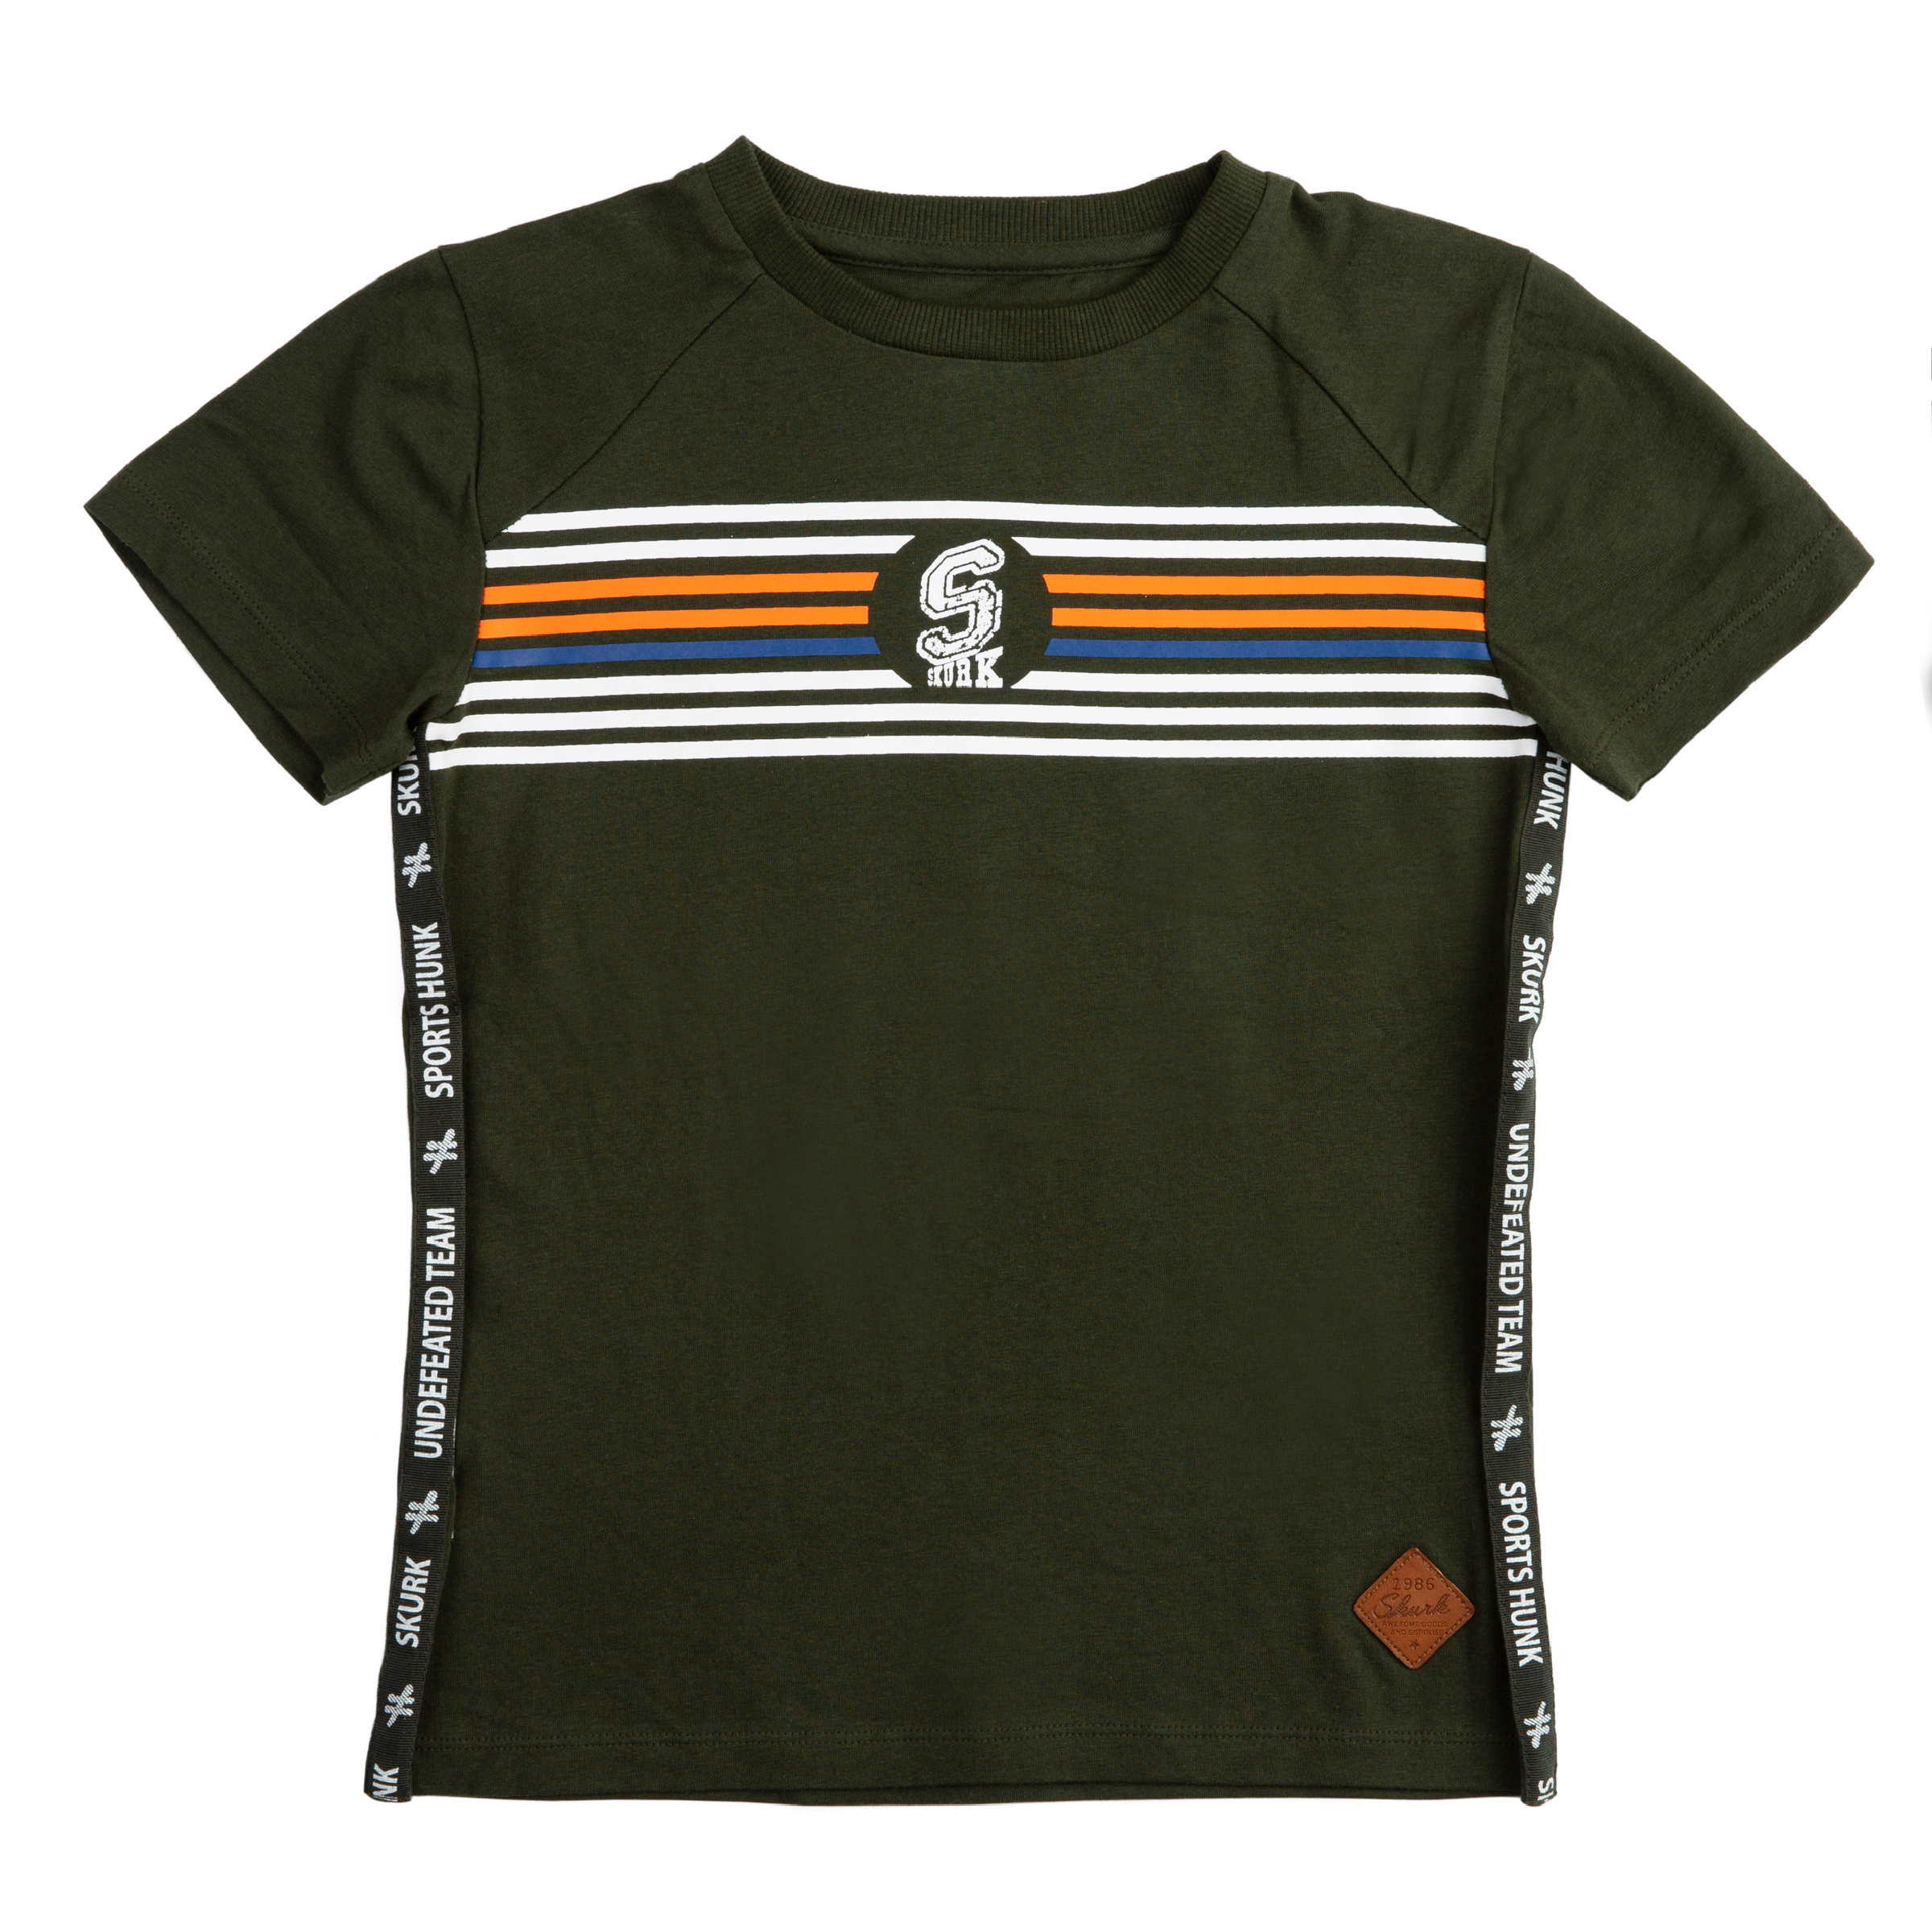 Jongens T-shirt Tade van Skurk in de kleur Army in maat 164, 170.